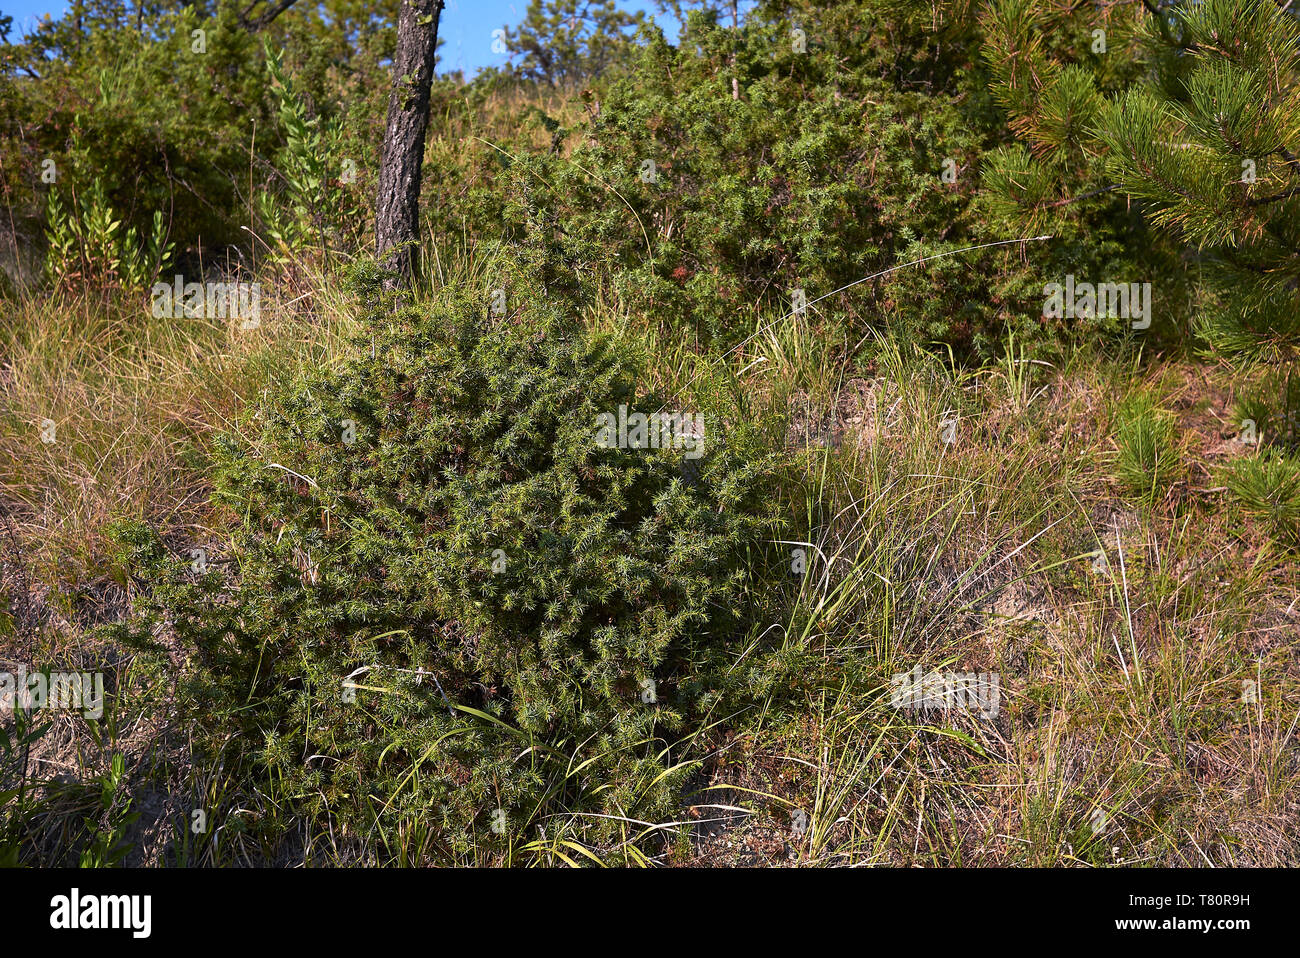 Juniperus communis shrubs in Italy Stock Photo